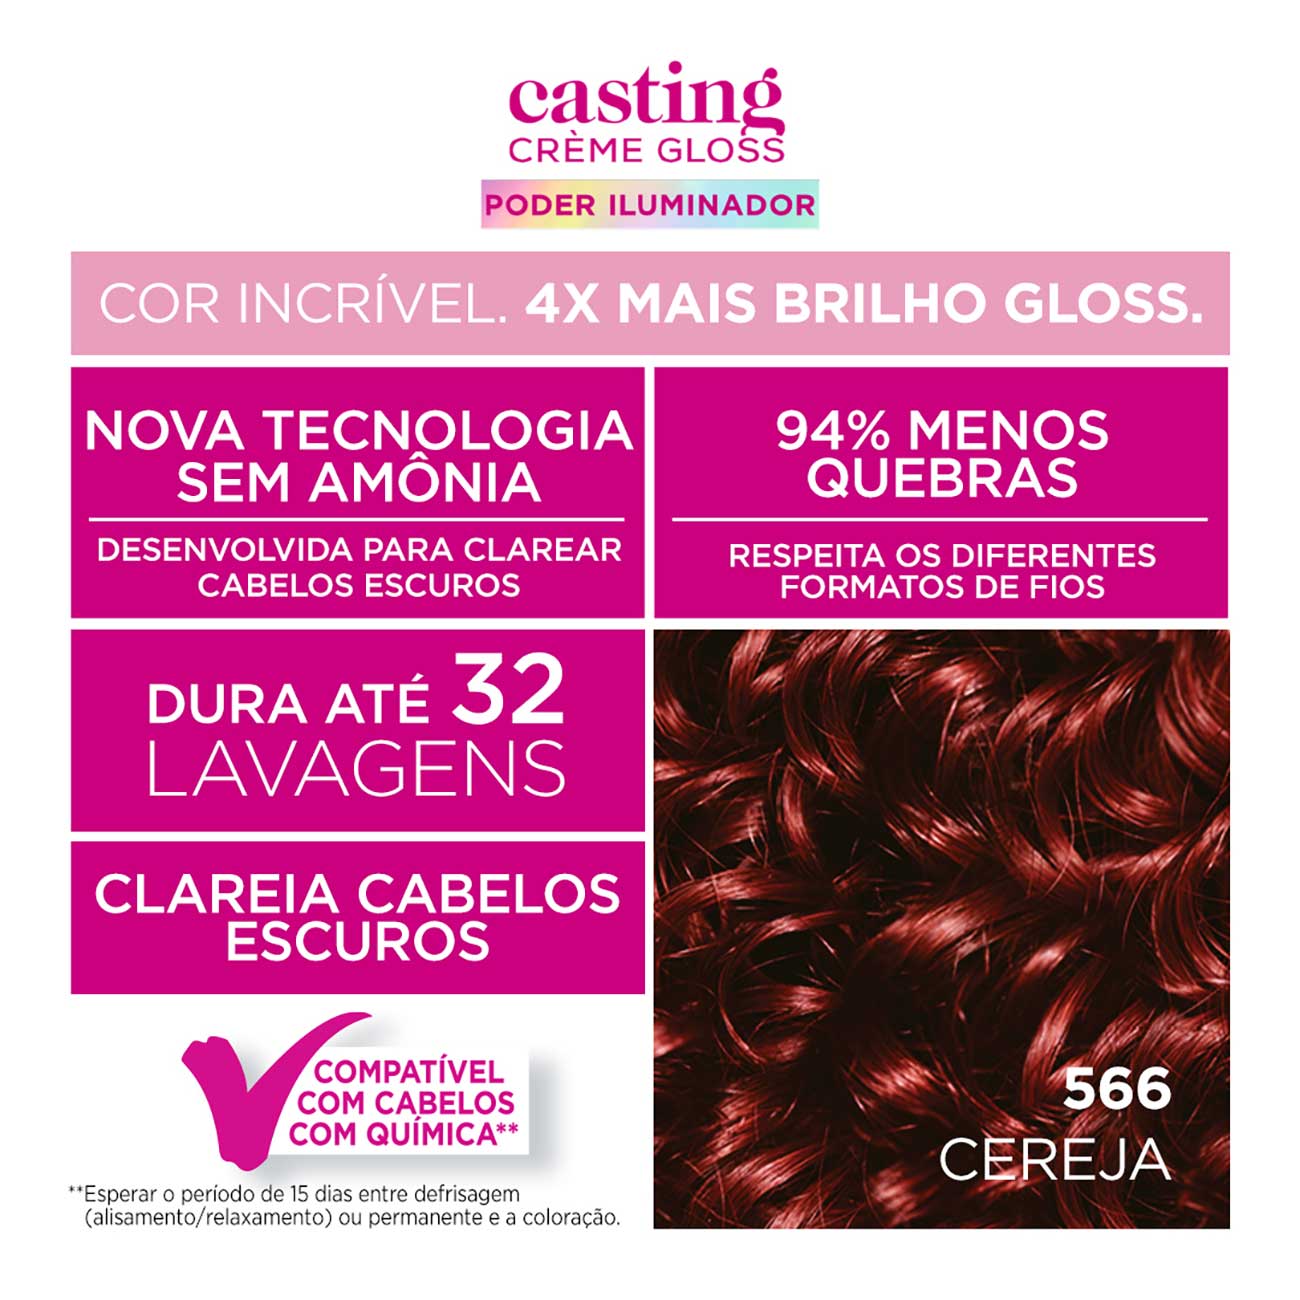 Colorao Casting Creme Gloss Poder Iluminador 566 Cereja